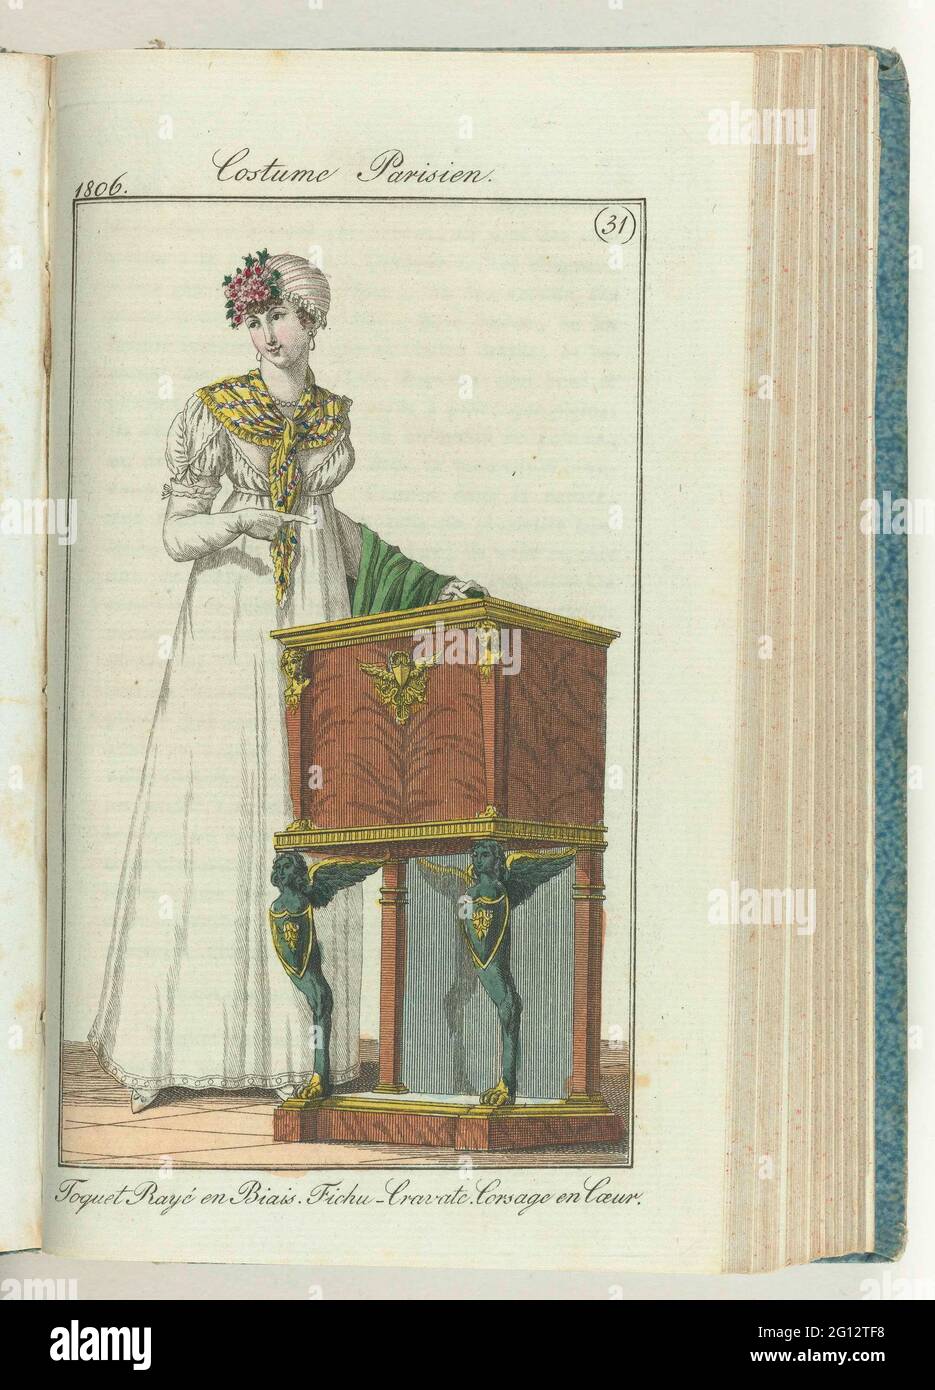 Journal des Ladies et des Modes, edition Frankfurt 28 Juillet 1806, Costume  Parisien (31): Toquet Rayé and Biais. FICHU-CRAVATE. Corsage and Coeur ..  woman at chifonnier (described as "a new type of